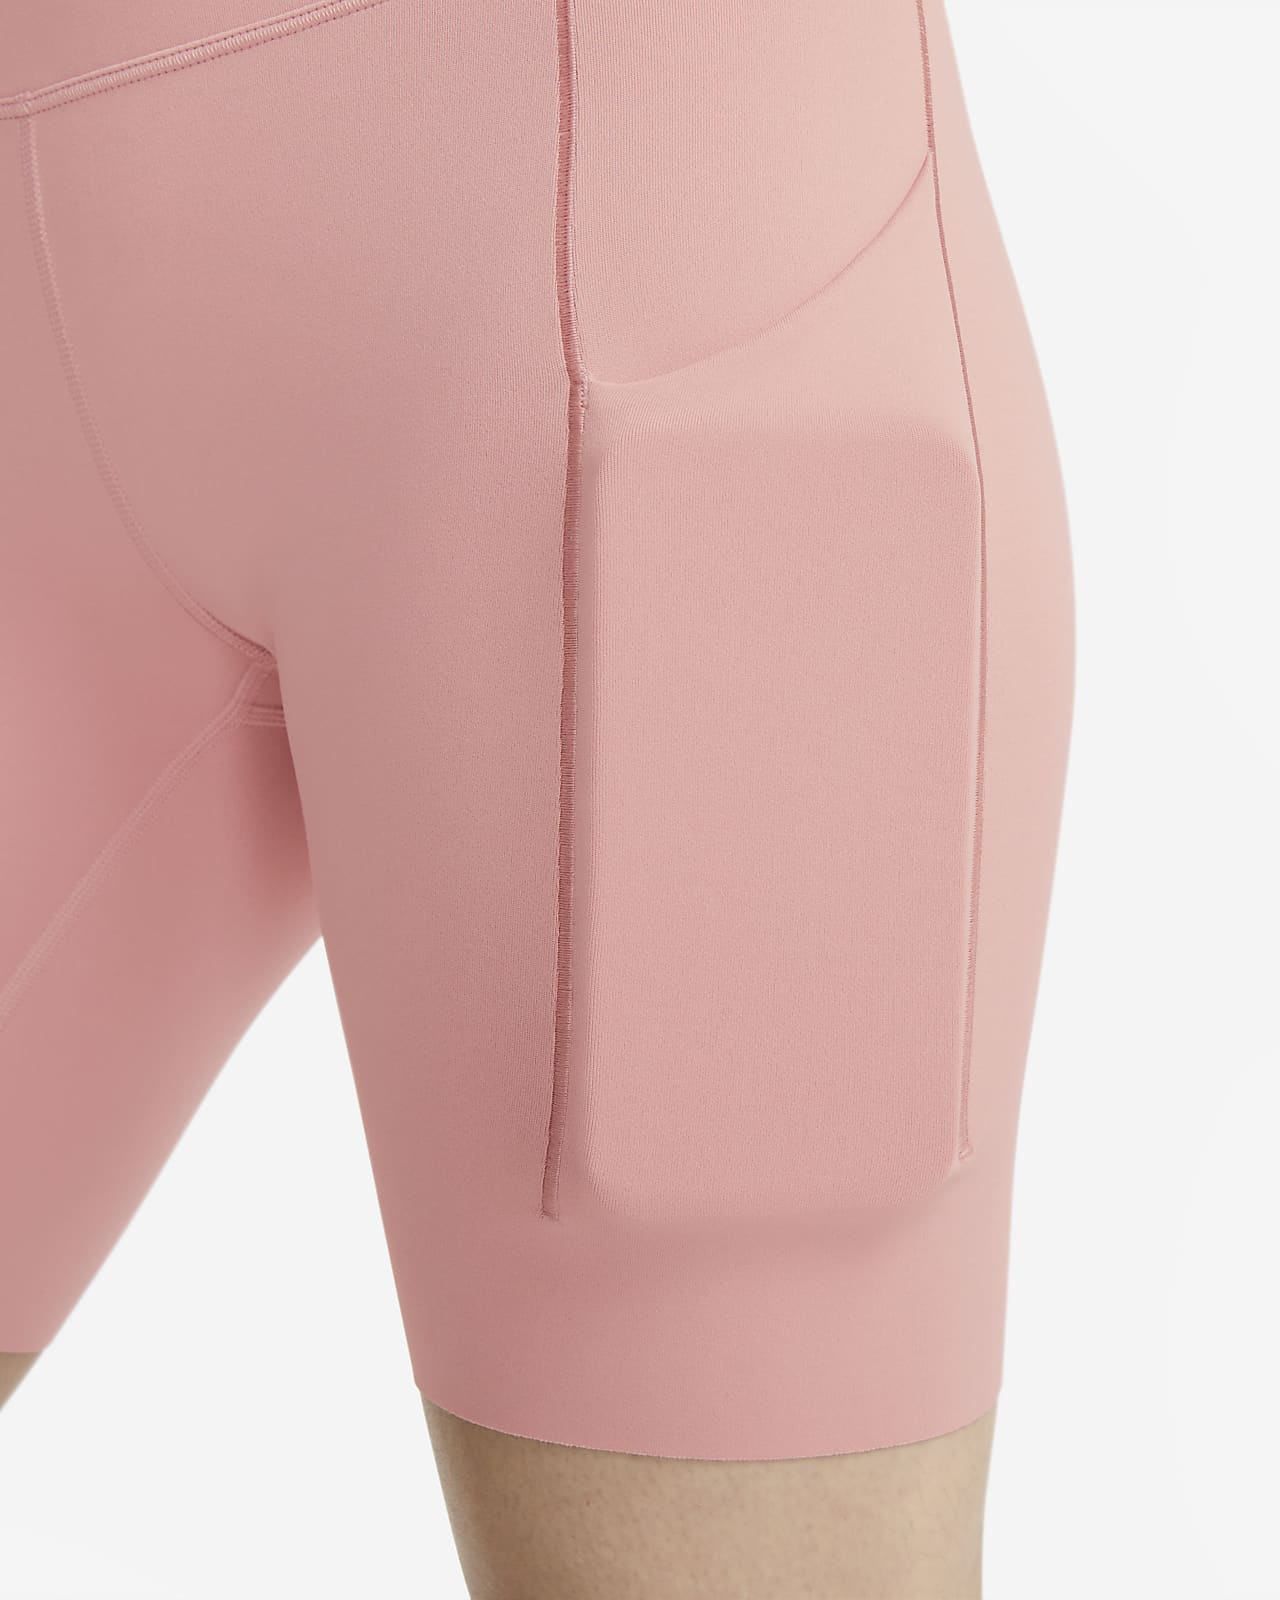 Damskie legginsy ze średnim stanem i kieszeniami o długości 7/8  zapewniające średnie wsparcie Nike Universa. Nike PL